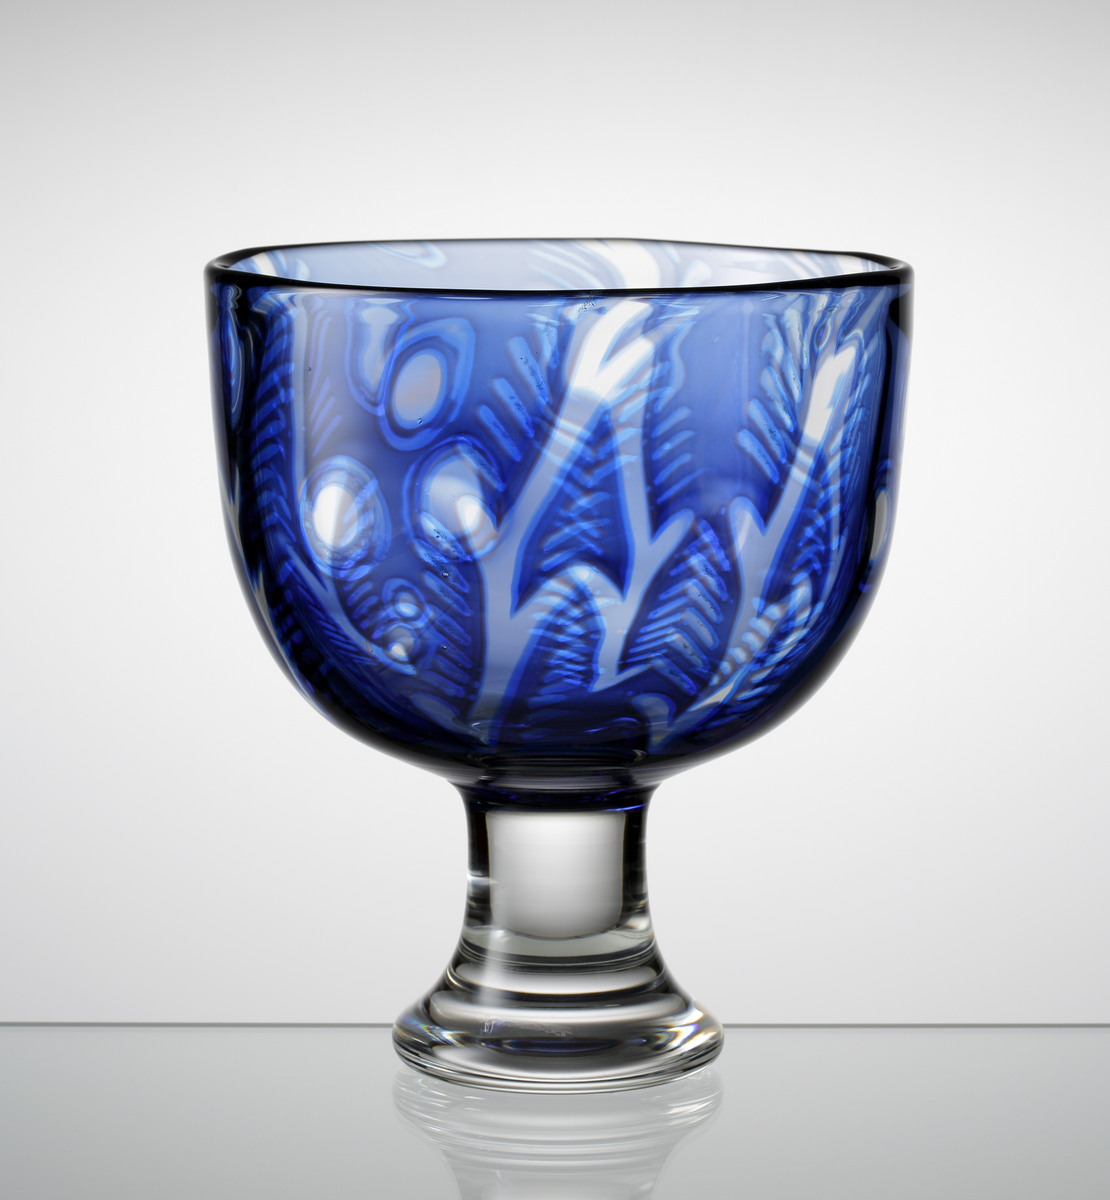 Formgivare: Gunnar Cyrén. Graalskål på fot. Sfärisk blå kupa med mönsterdekor i klarglas och mörkare blått.